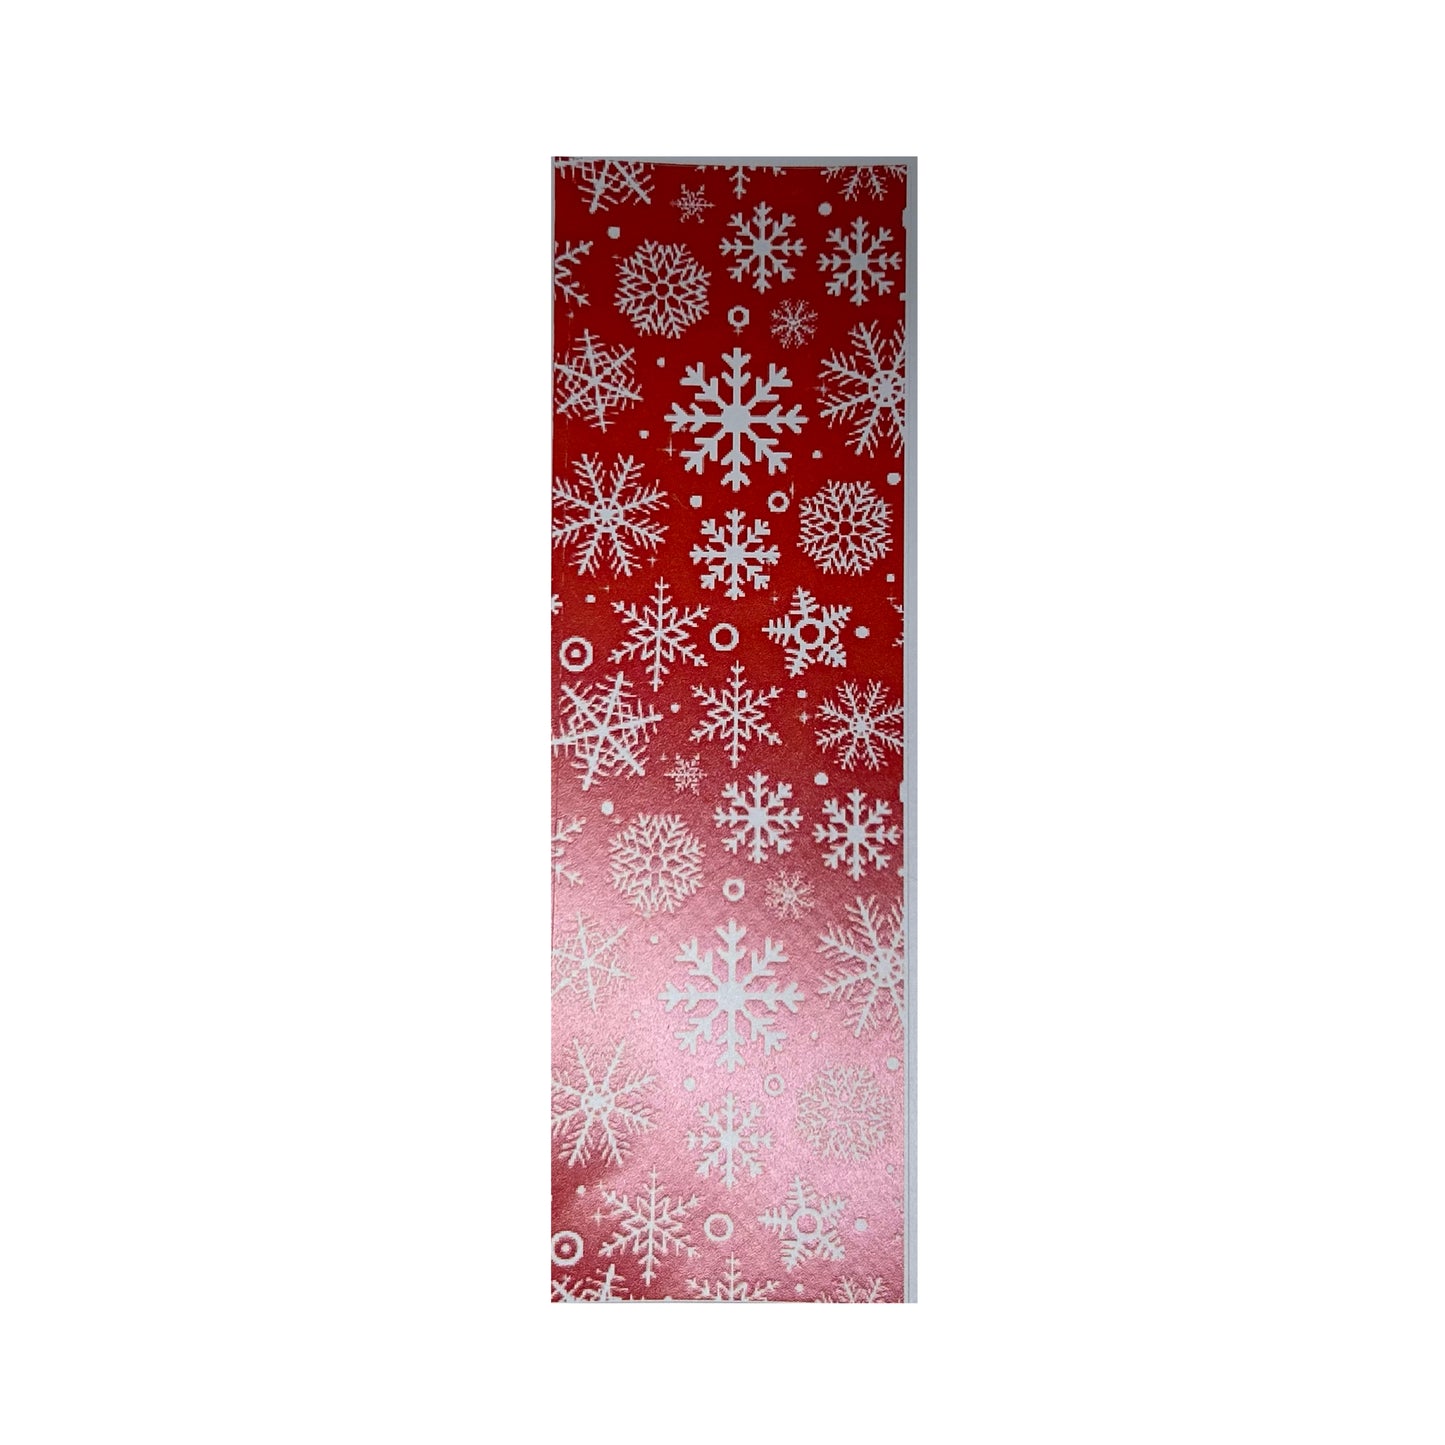 Snowflake- Red Pen Wrap